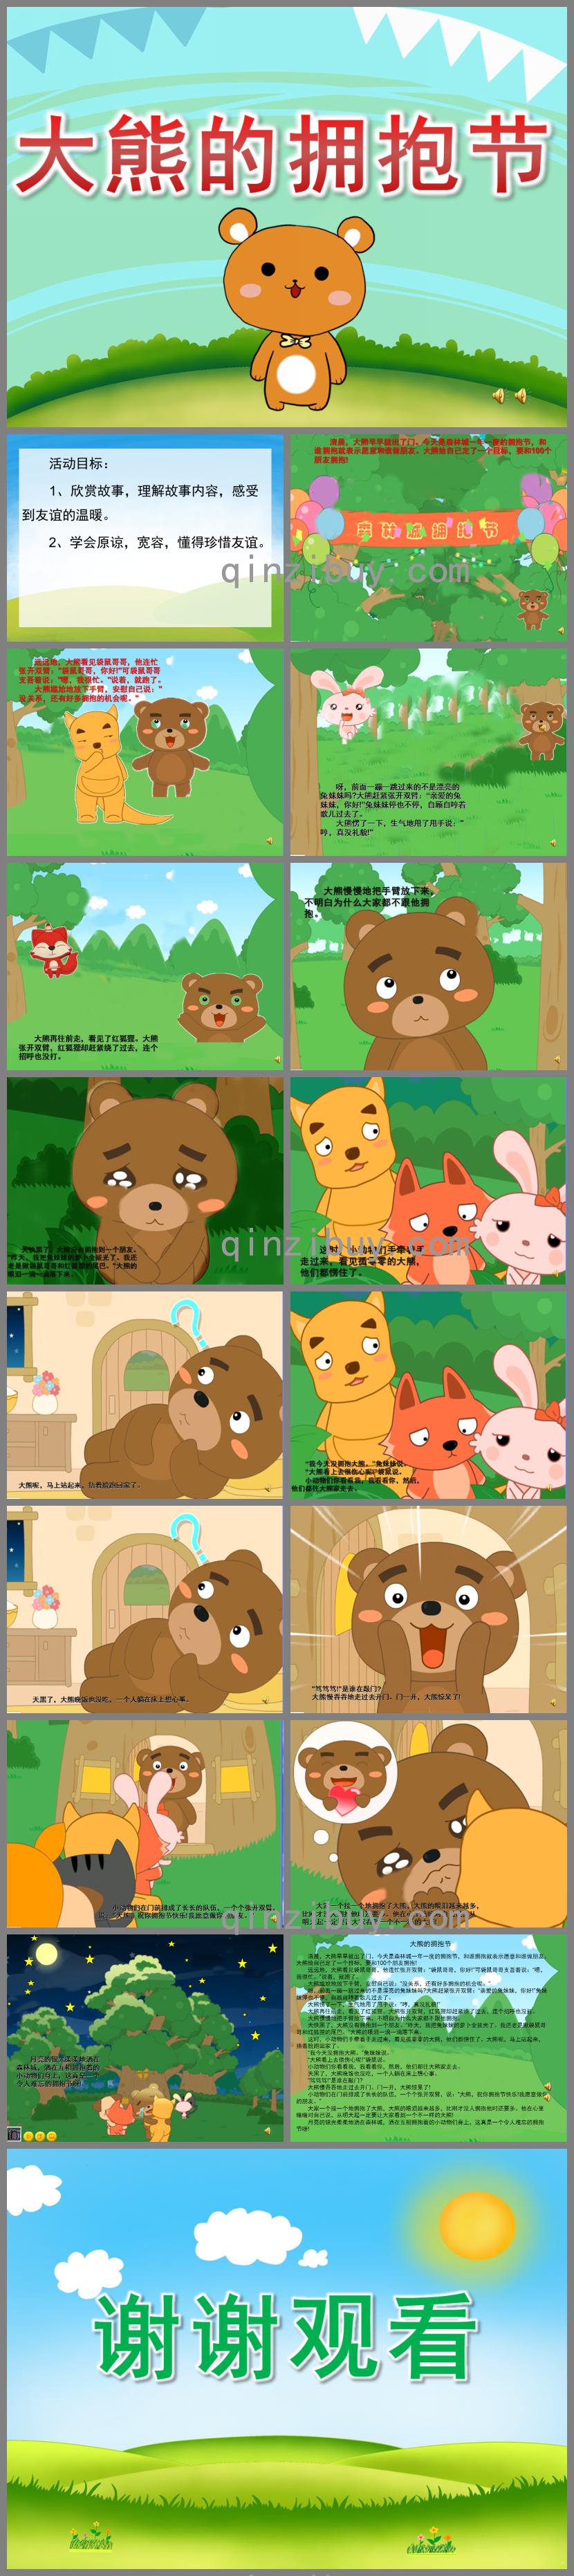 大班语言《大熊的拥抱节》PPT课件音频动画